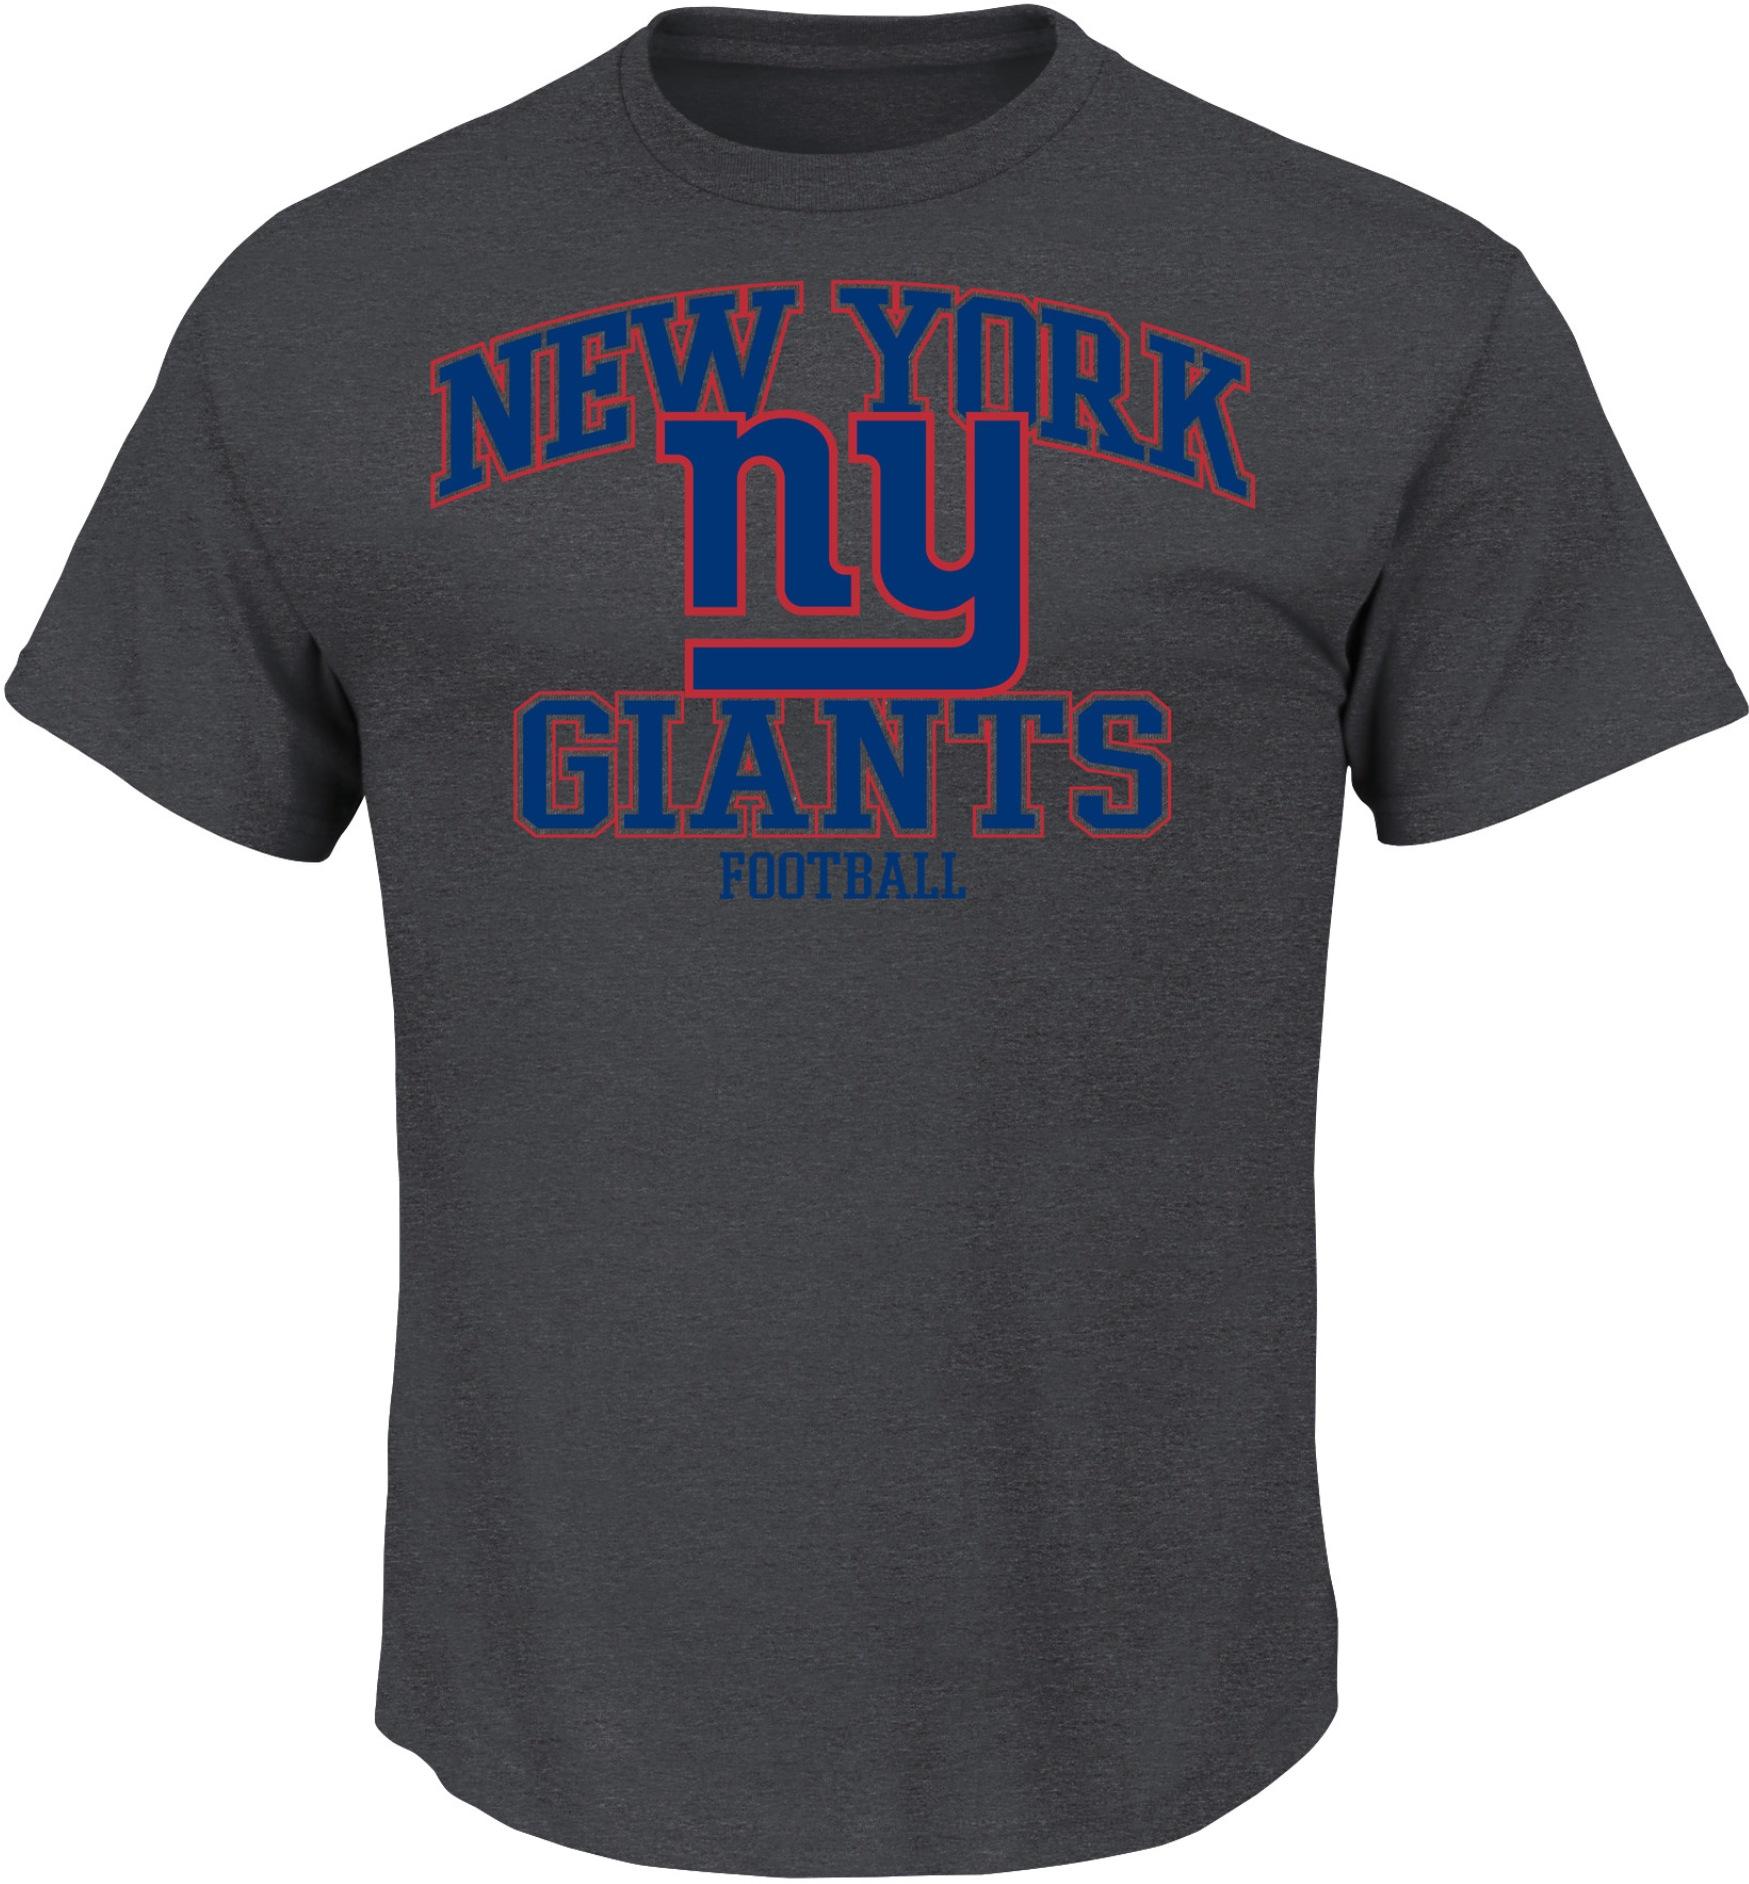 NFL Men's T-Shirt - New York Giants